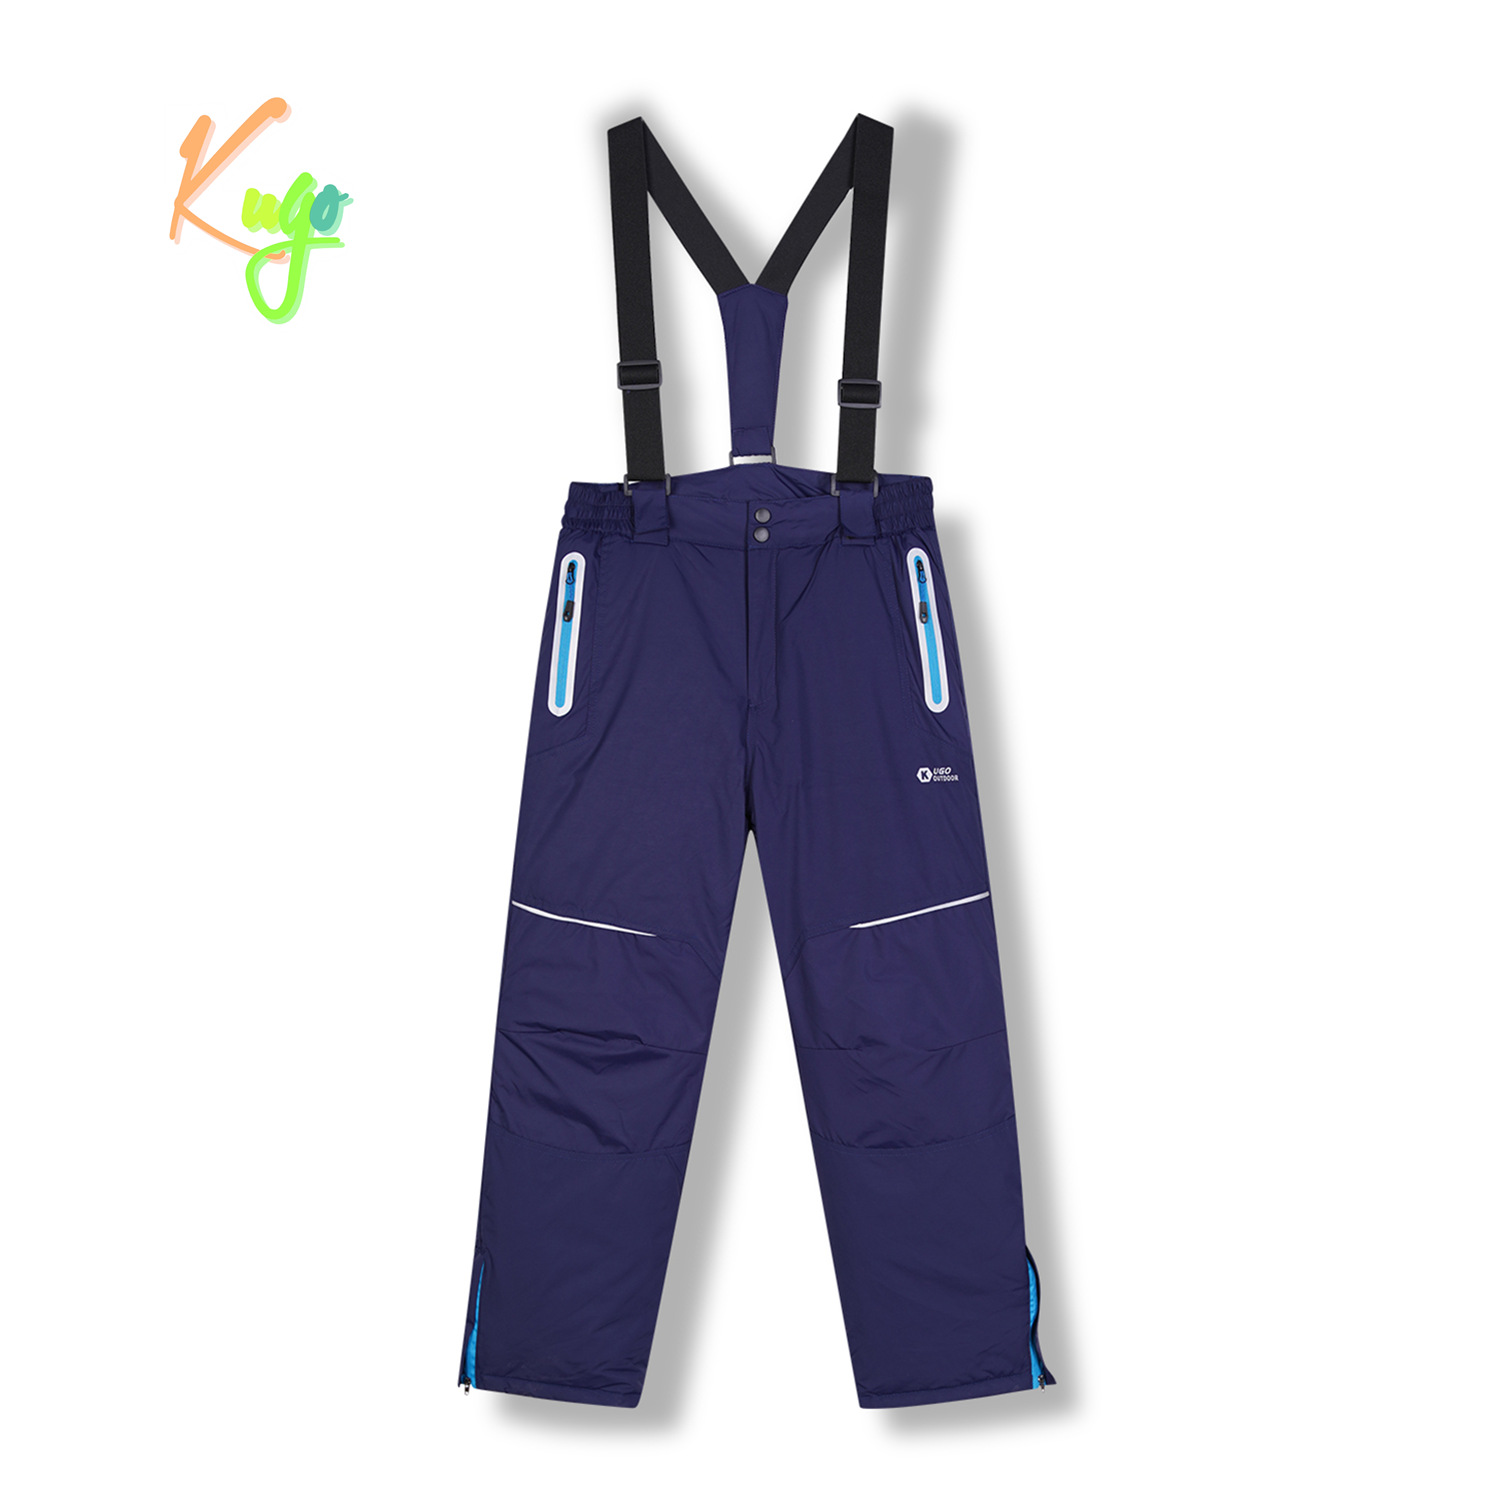 Chlapecké lyžařské kalhoty - KUGO DK8231, tmavě modrá Barva: Modrá tmavě, Velikost: 146